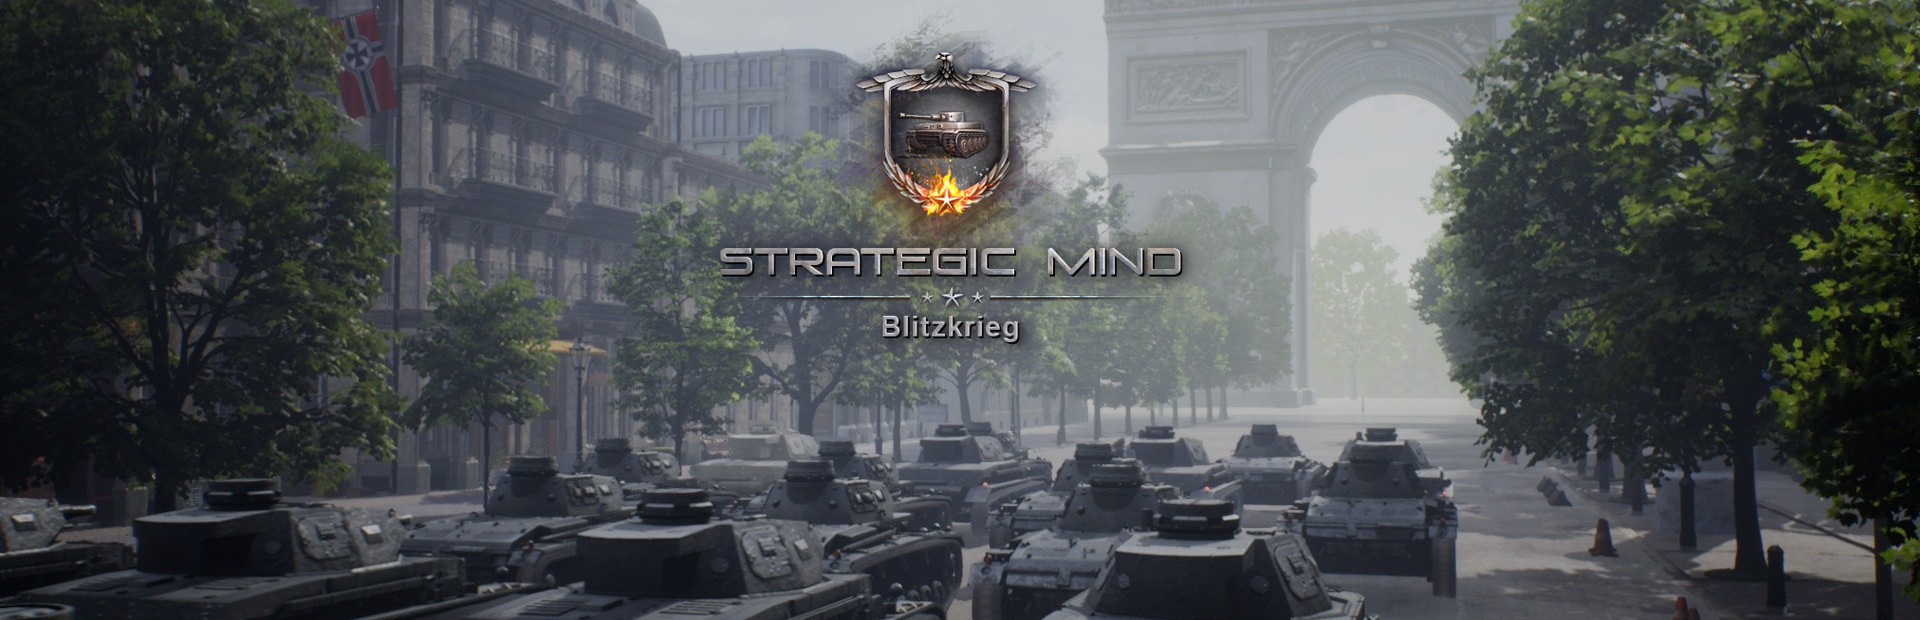 دانلود بازی Strategic Mind: Blitzkrieg برای پی سی | گیمباتو